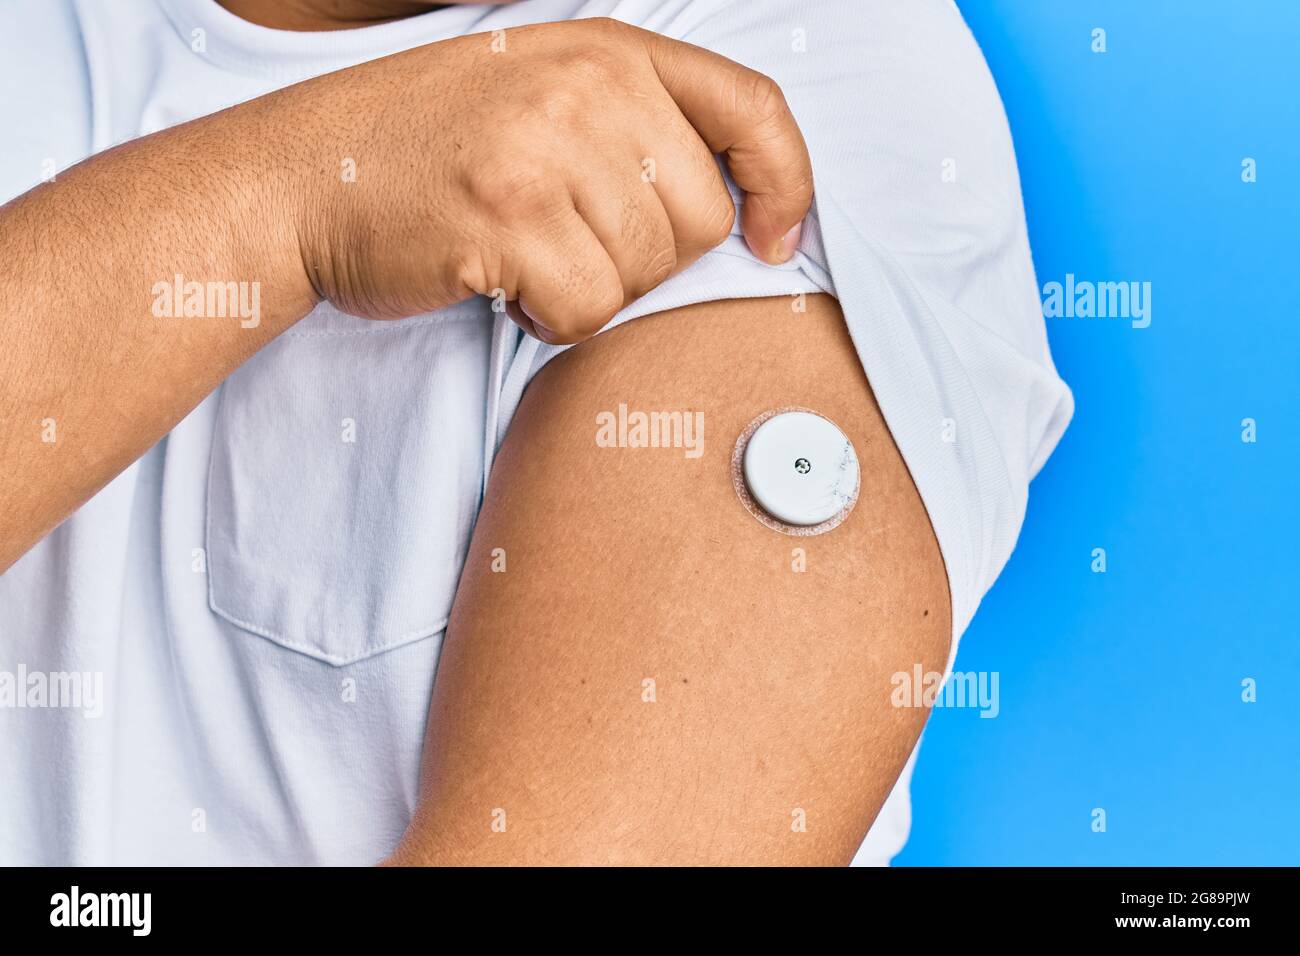 Homme hispanique montrant un appareil de diabète sur le bras Photo Stock -  Alamy